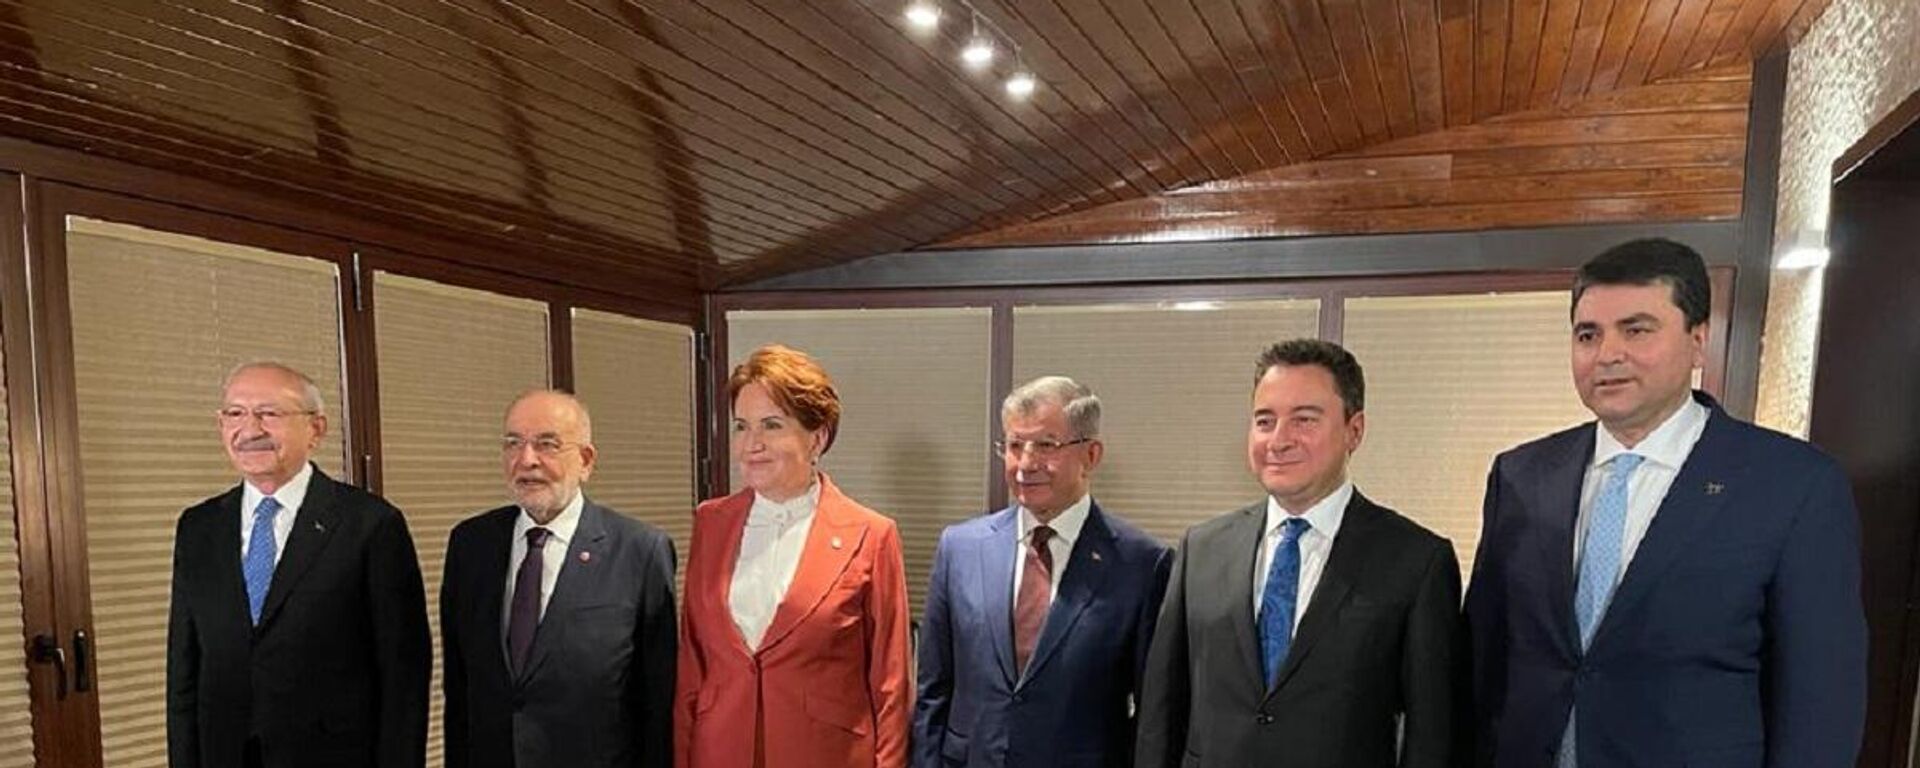 CHP Genel Başkanı Kemal Kılıçdaroğlu'nun daveti ile 6 parti lideri akşam yemeğinde bir araya geldi. - Sputnik Türkiye, 1920, 20.08.2022